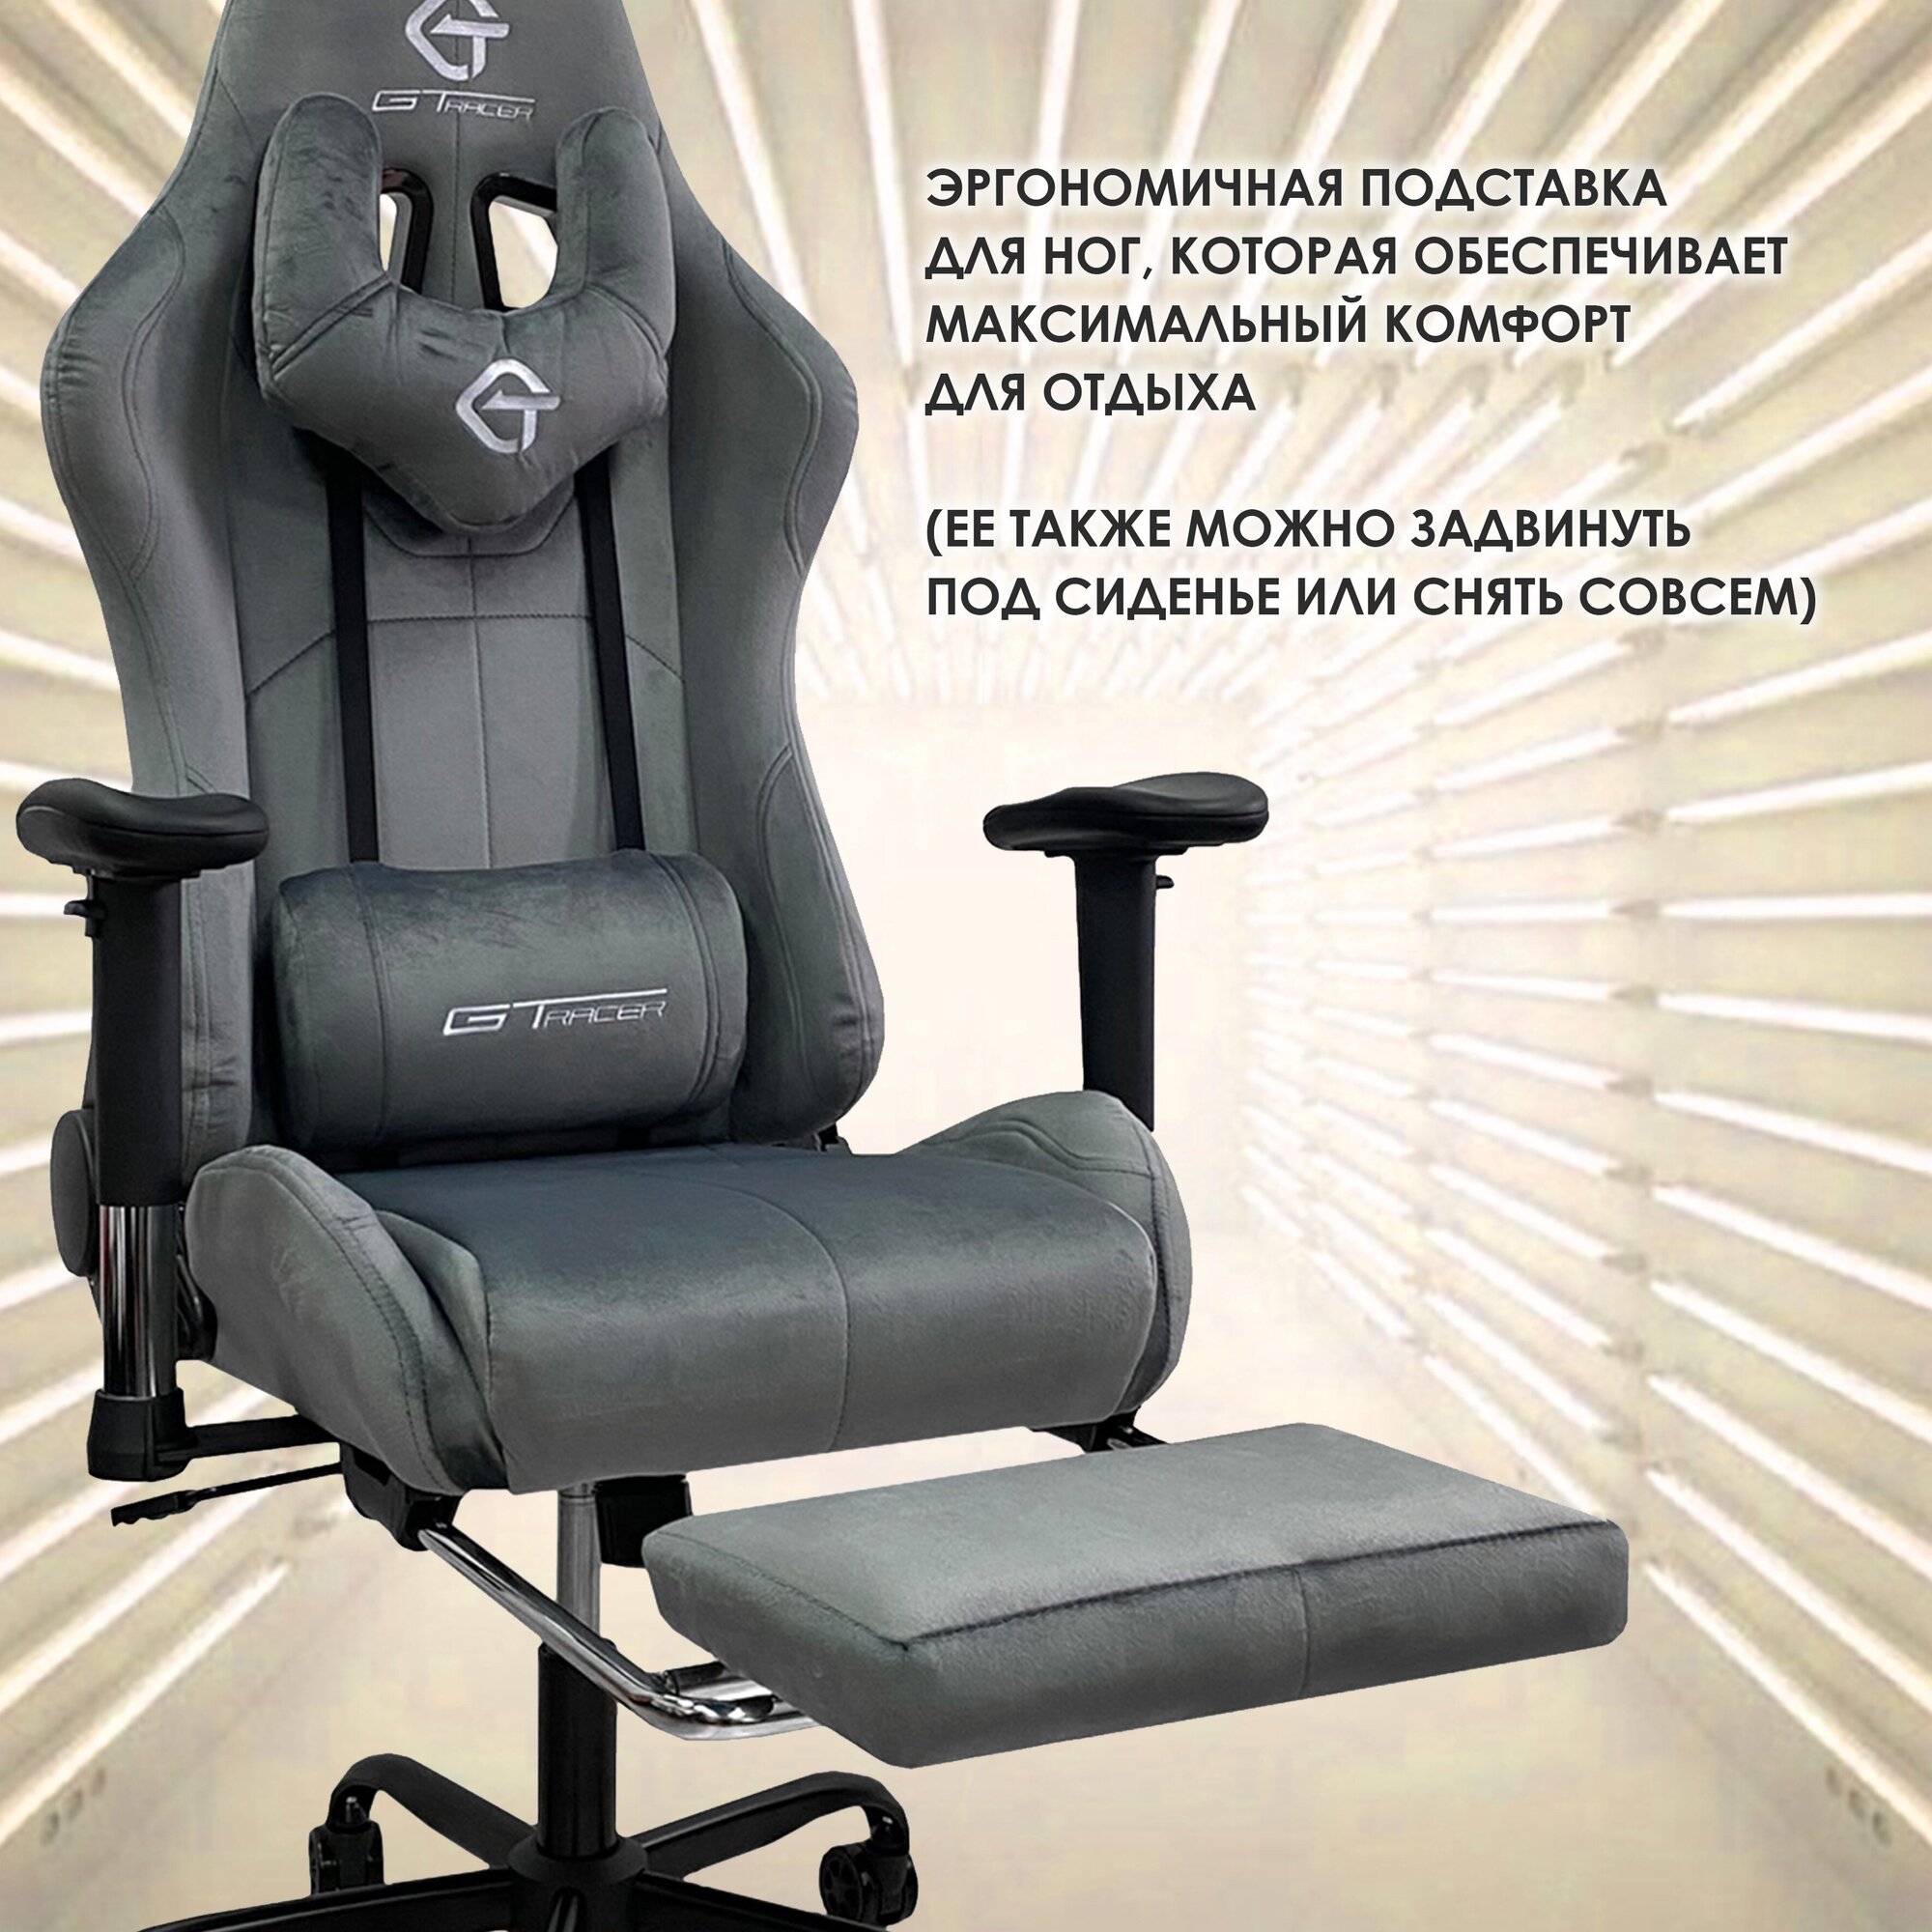 Компьютерное кресло велюровое GTracer 305F игровое, цвет: серый - фотография № 8